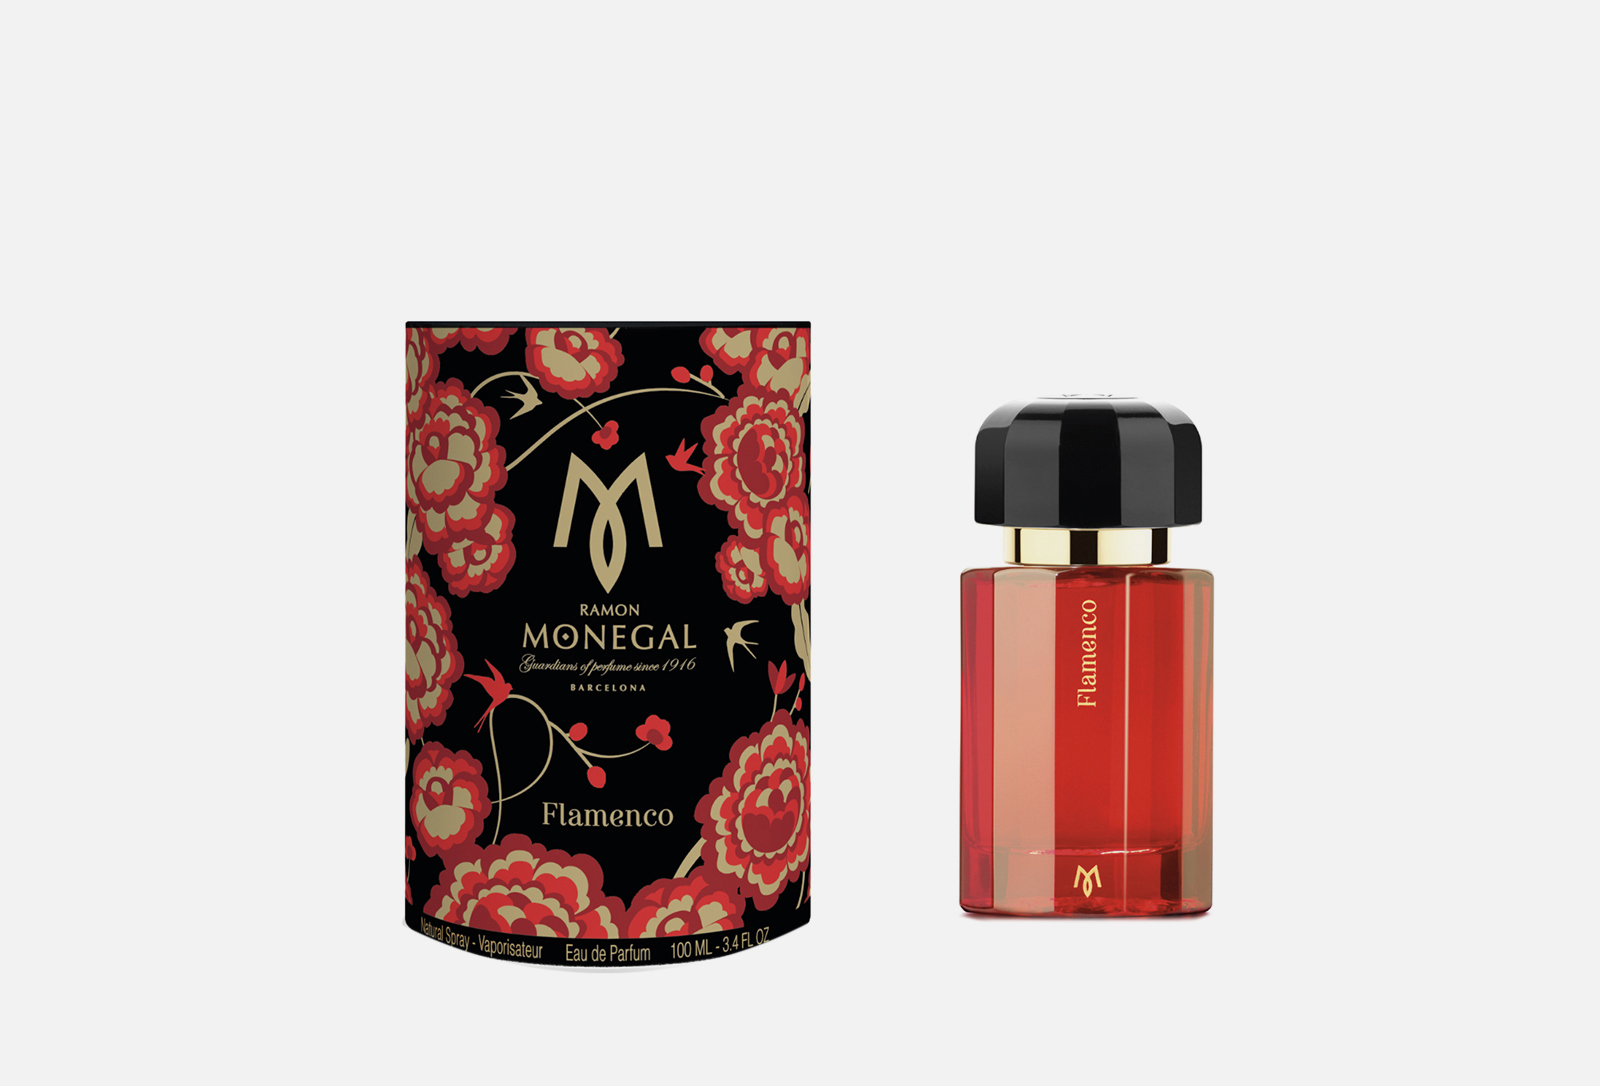 Ramon Monegal парфюмерная вода Flamenco 100 мл — купить в Москве